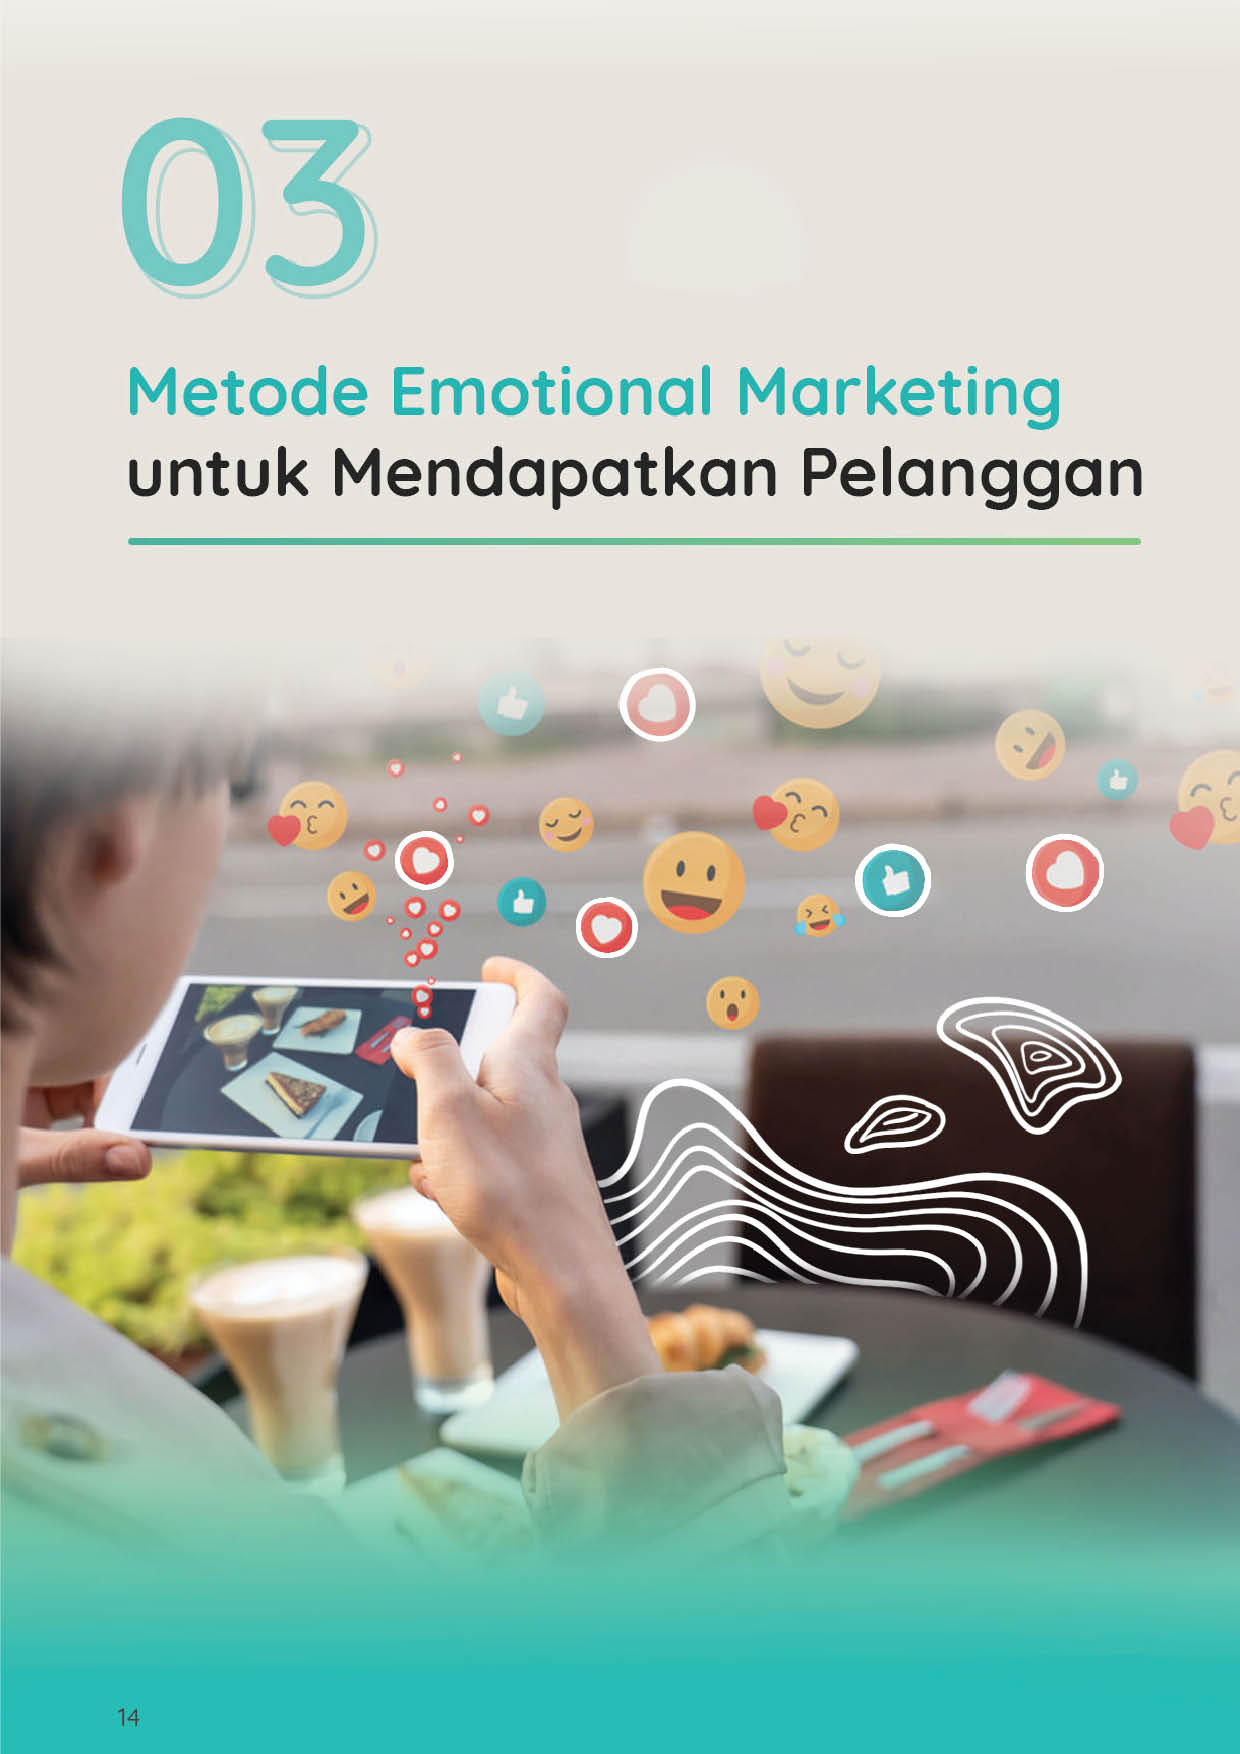 Metode Emotional Marketing untuk Mendapatkan Pelanggan